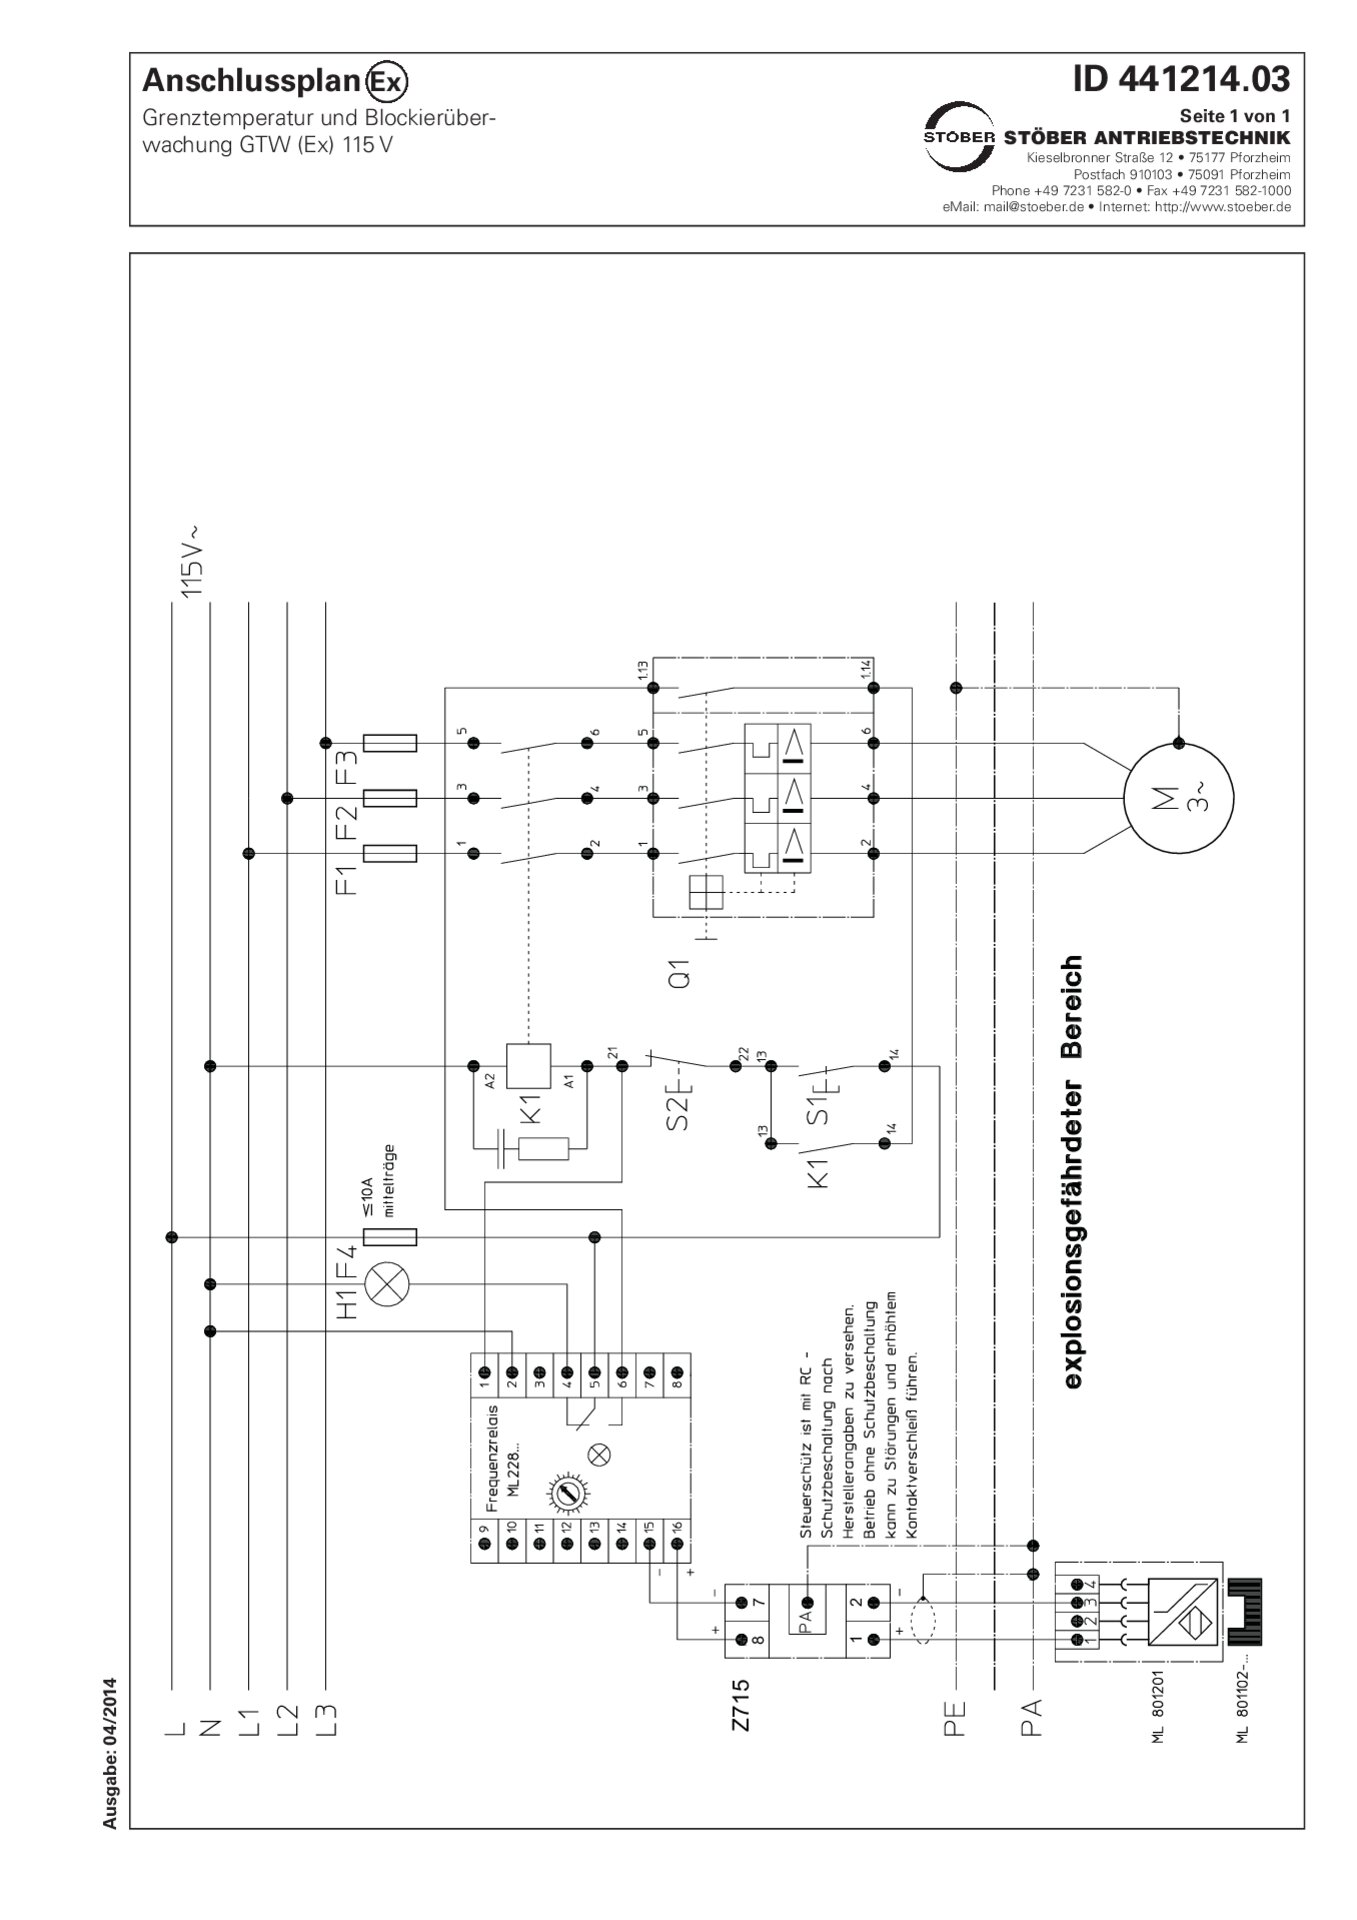 Anschlussplan R17-R86 Grenztemperatur und Blockierüberwachung GTW (Ex) 115 V